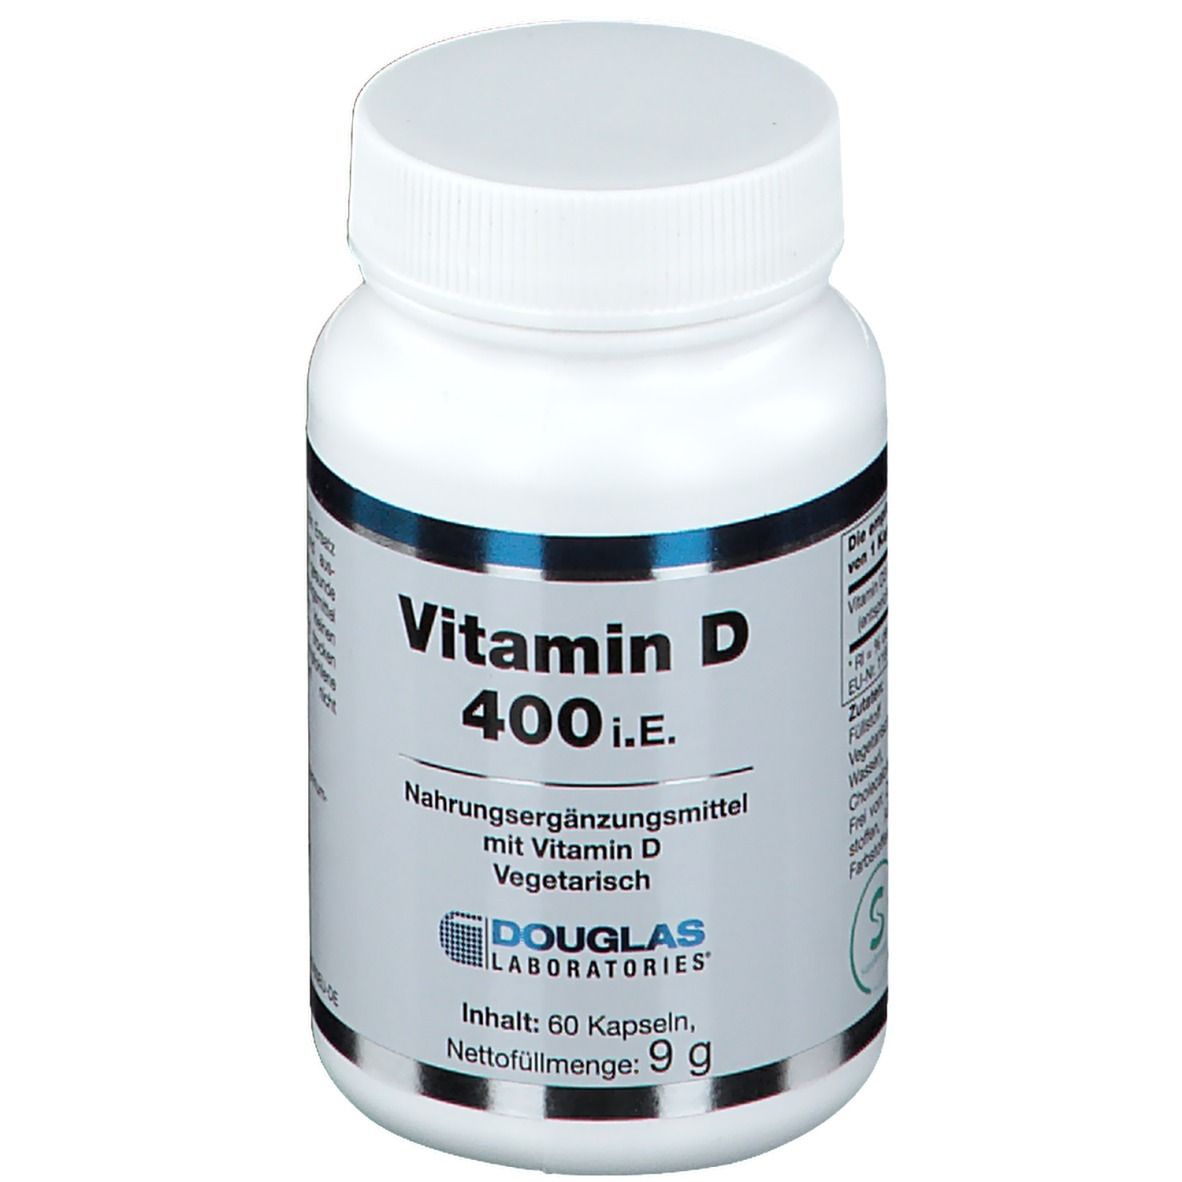 Vitamin D 400 I.E.